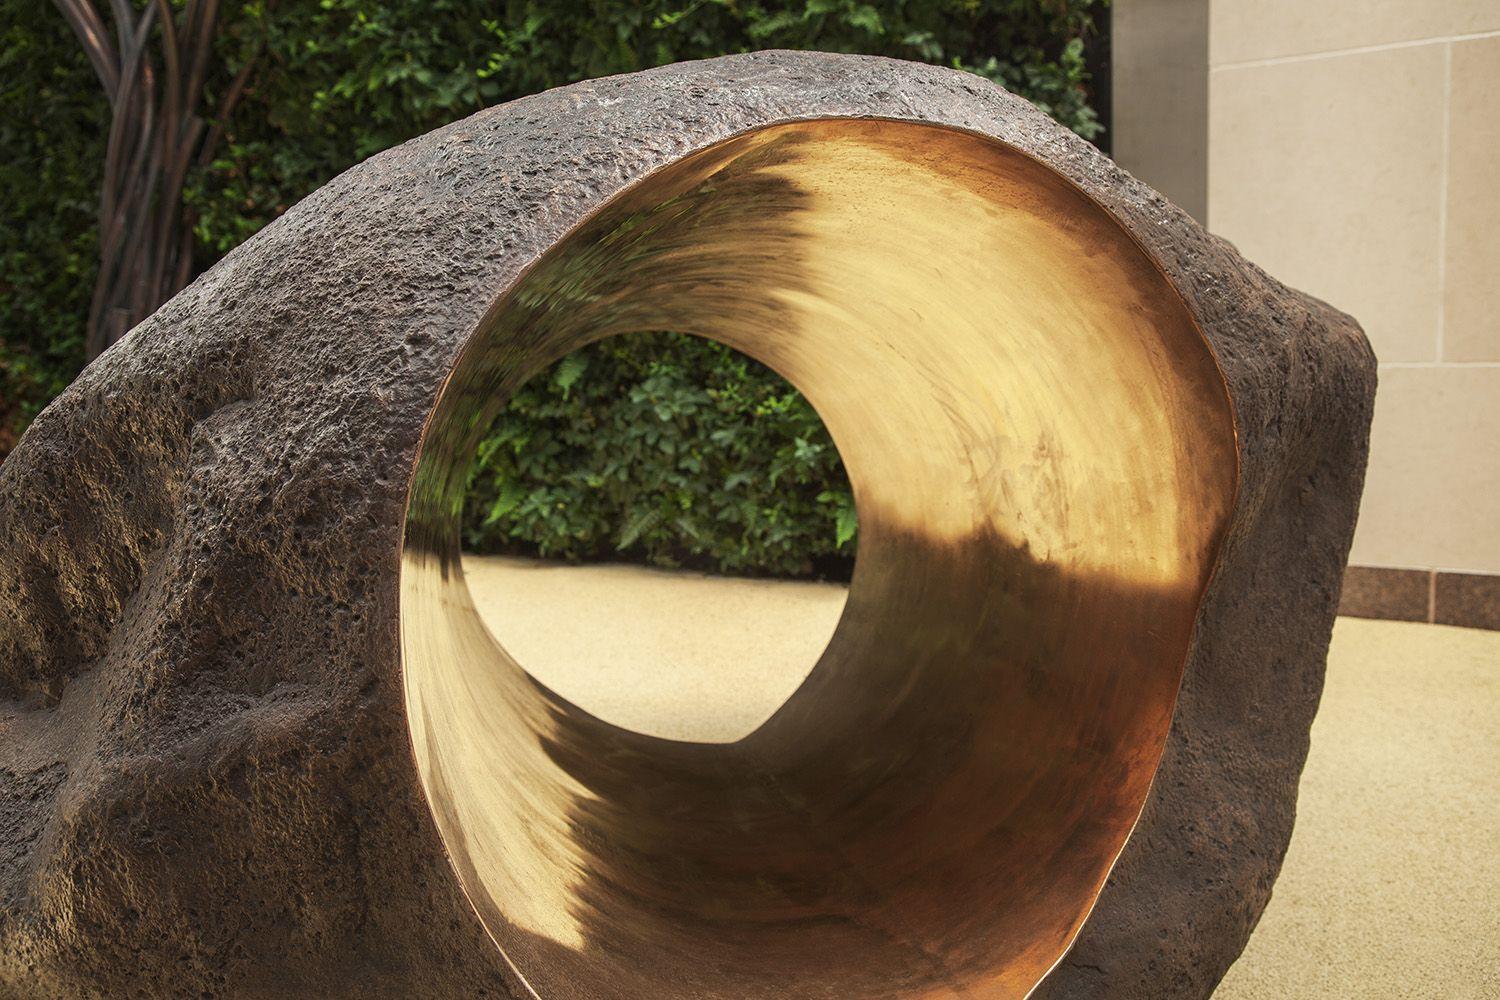 Boulder #3 - The Tunnel ist eine Bronzeskulptur des zeitgenössischen Künstlers Tom Price mit den Maßen 90 × 150 × 140 cm (35,4 × 59,1 × 55,1 in). 
Dieses Kunstwerk ist als Auftragsarbeit erhältlich. Sie wird auf der gleichen Grundlage wie in den